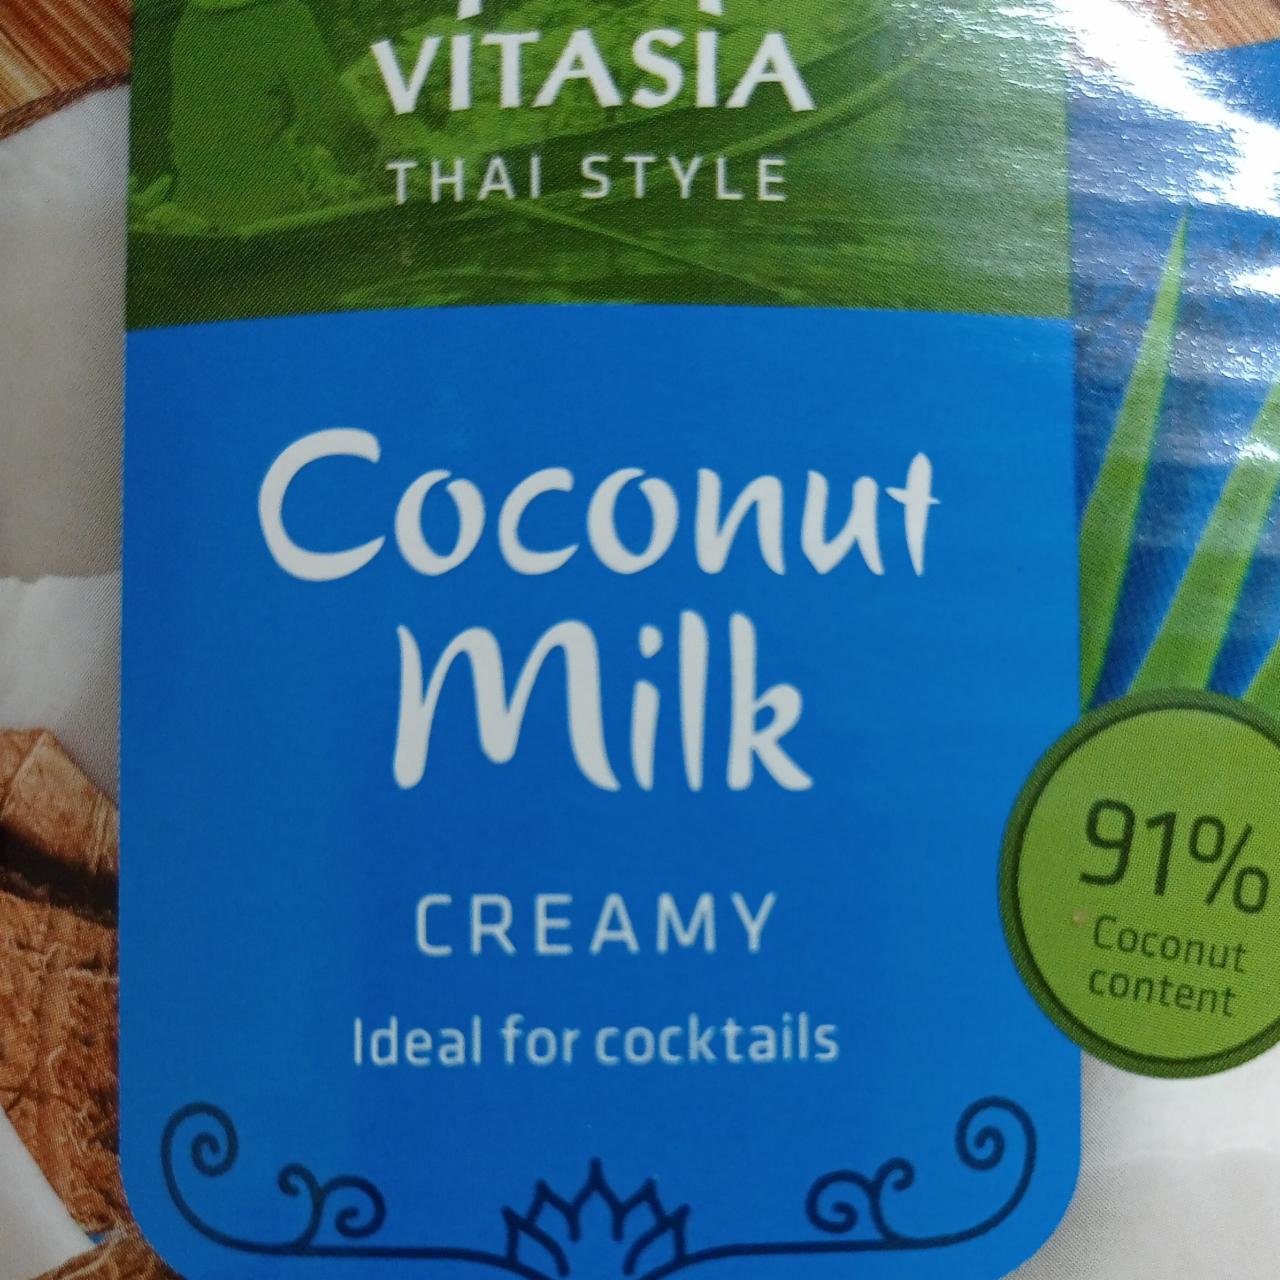 Fotografie - Coconut milk creamy Vitasia